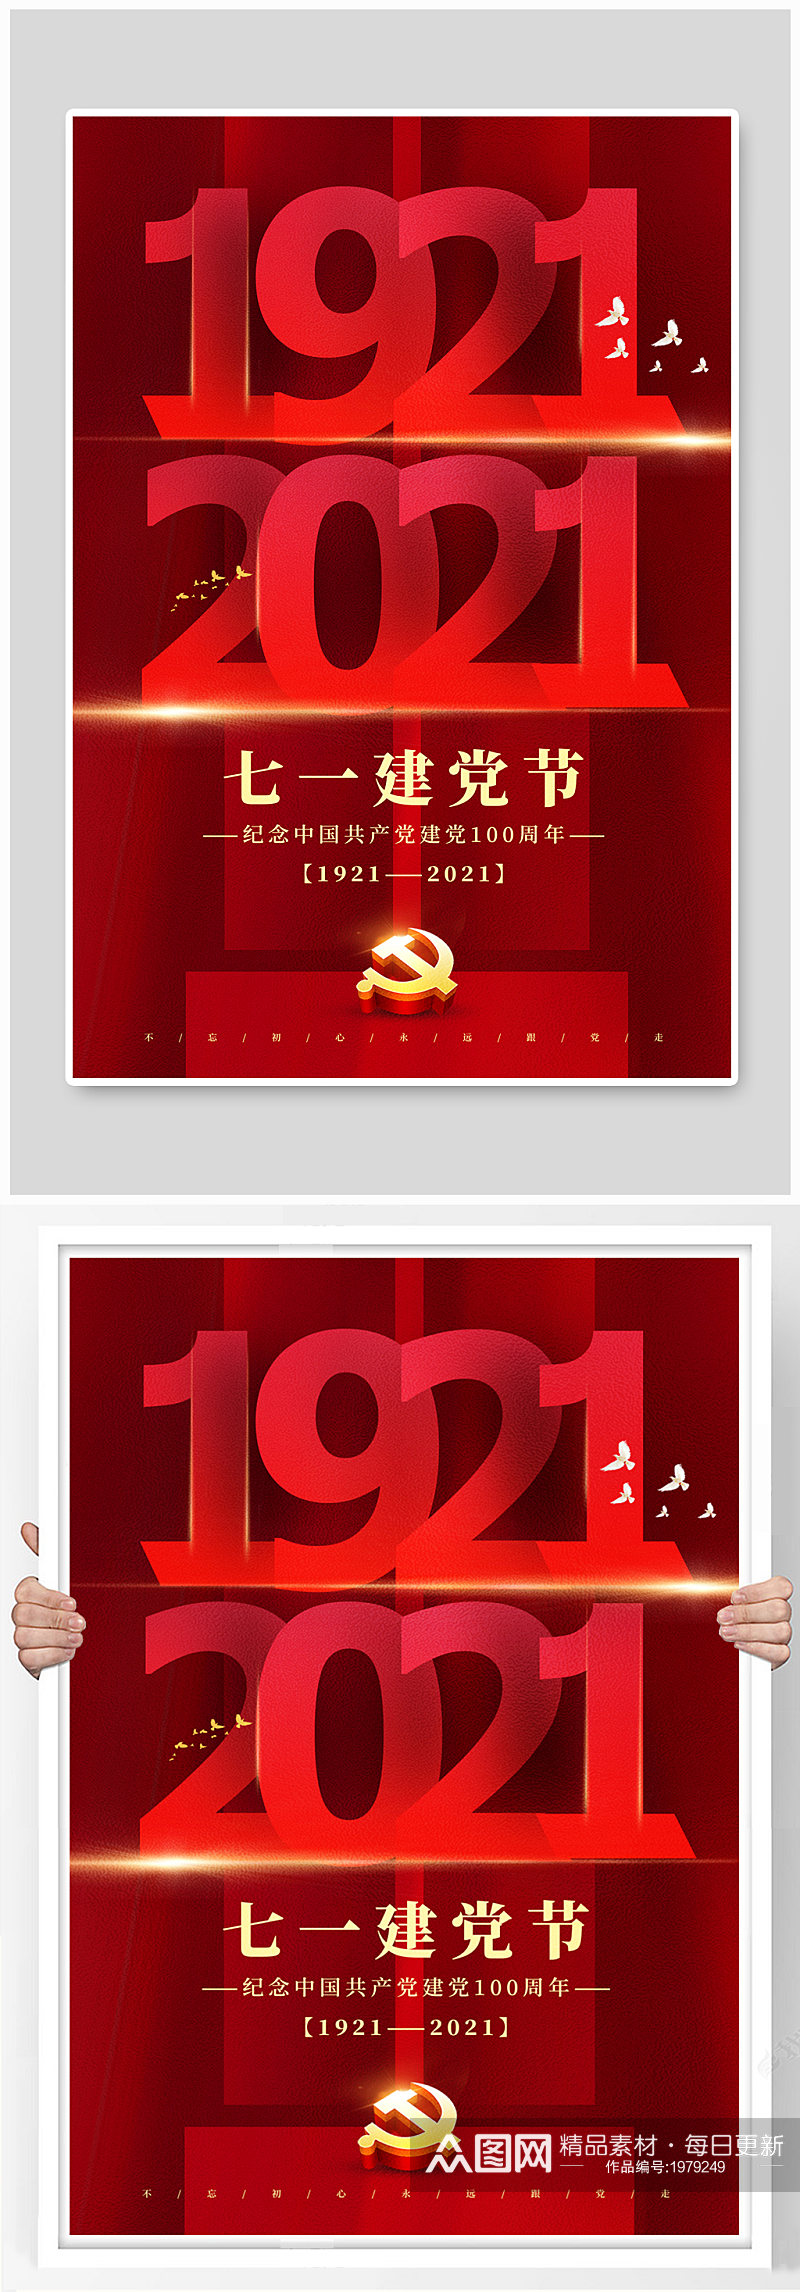 红色大气建党节100周年主题海报素材